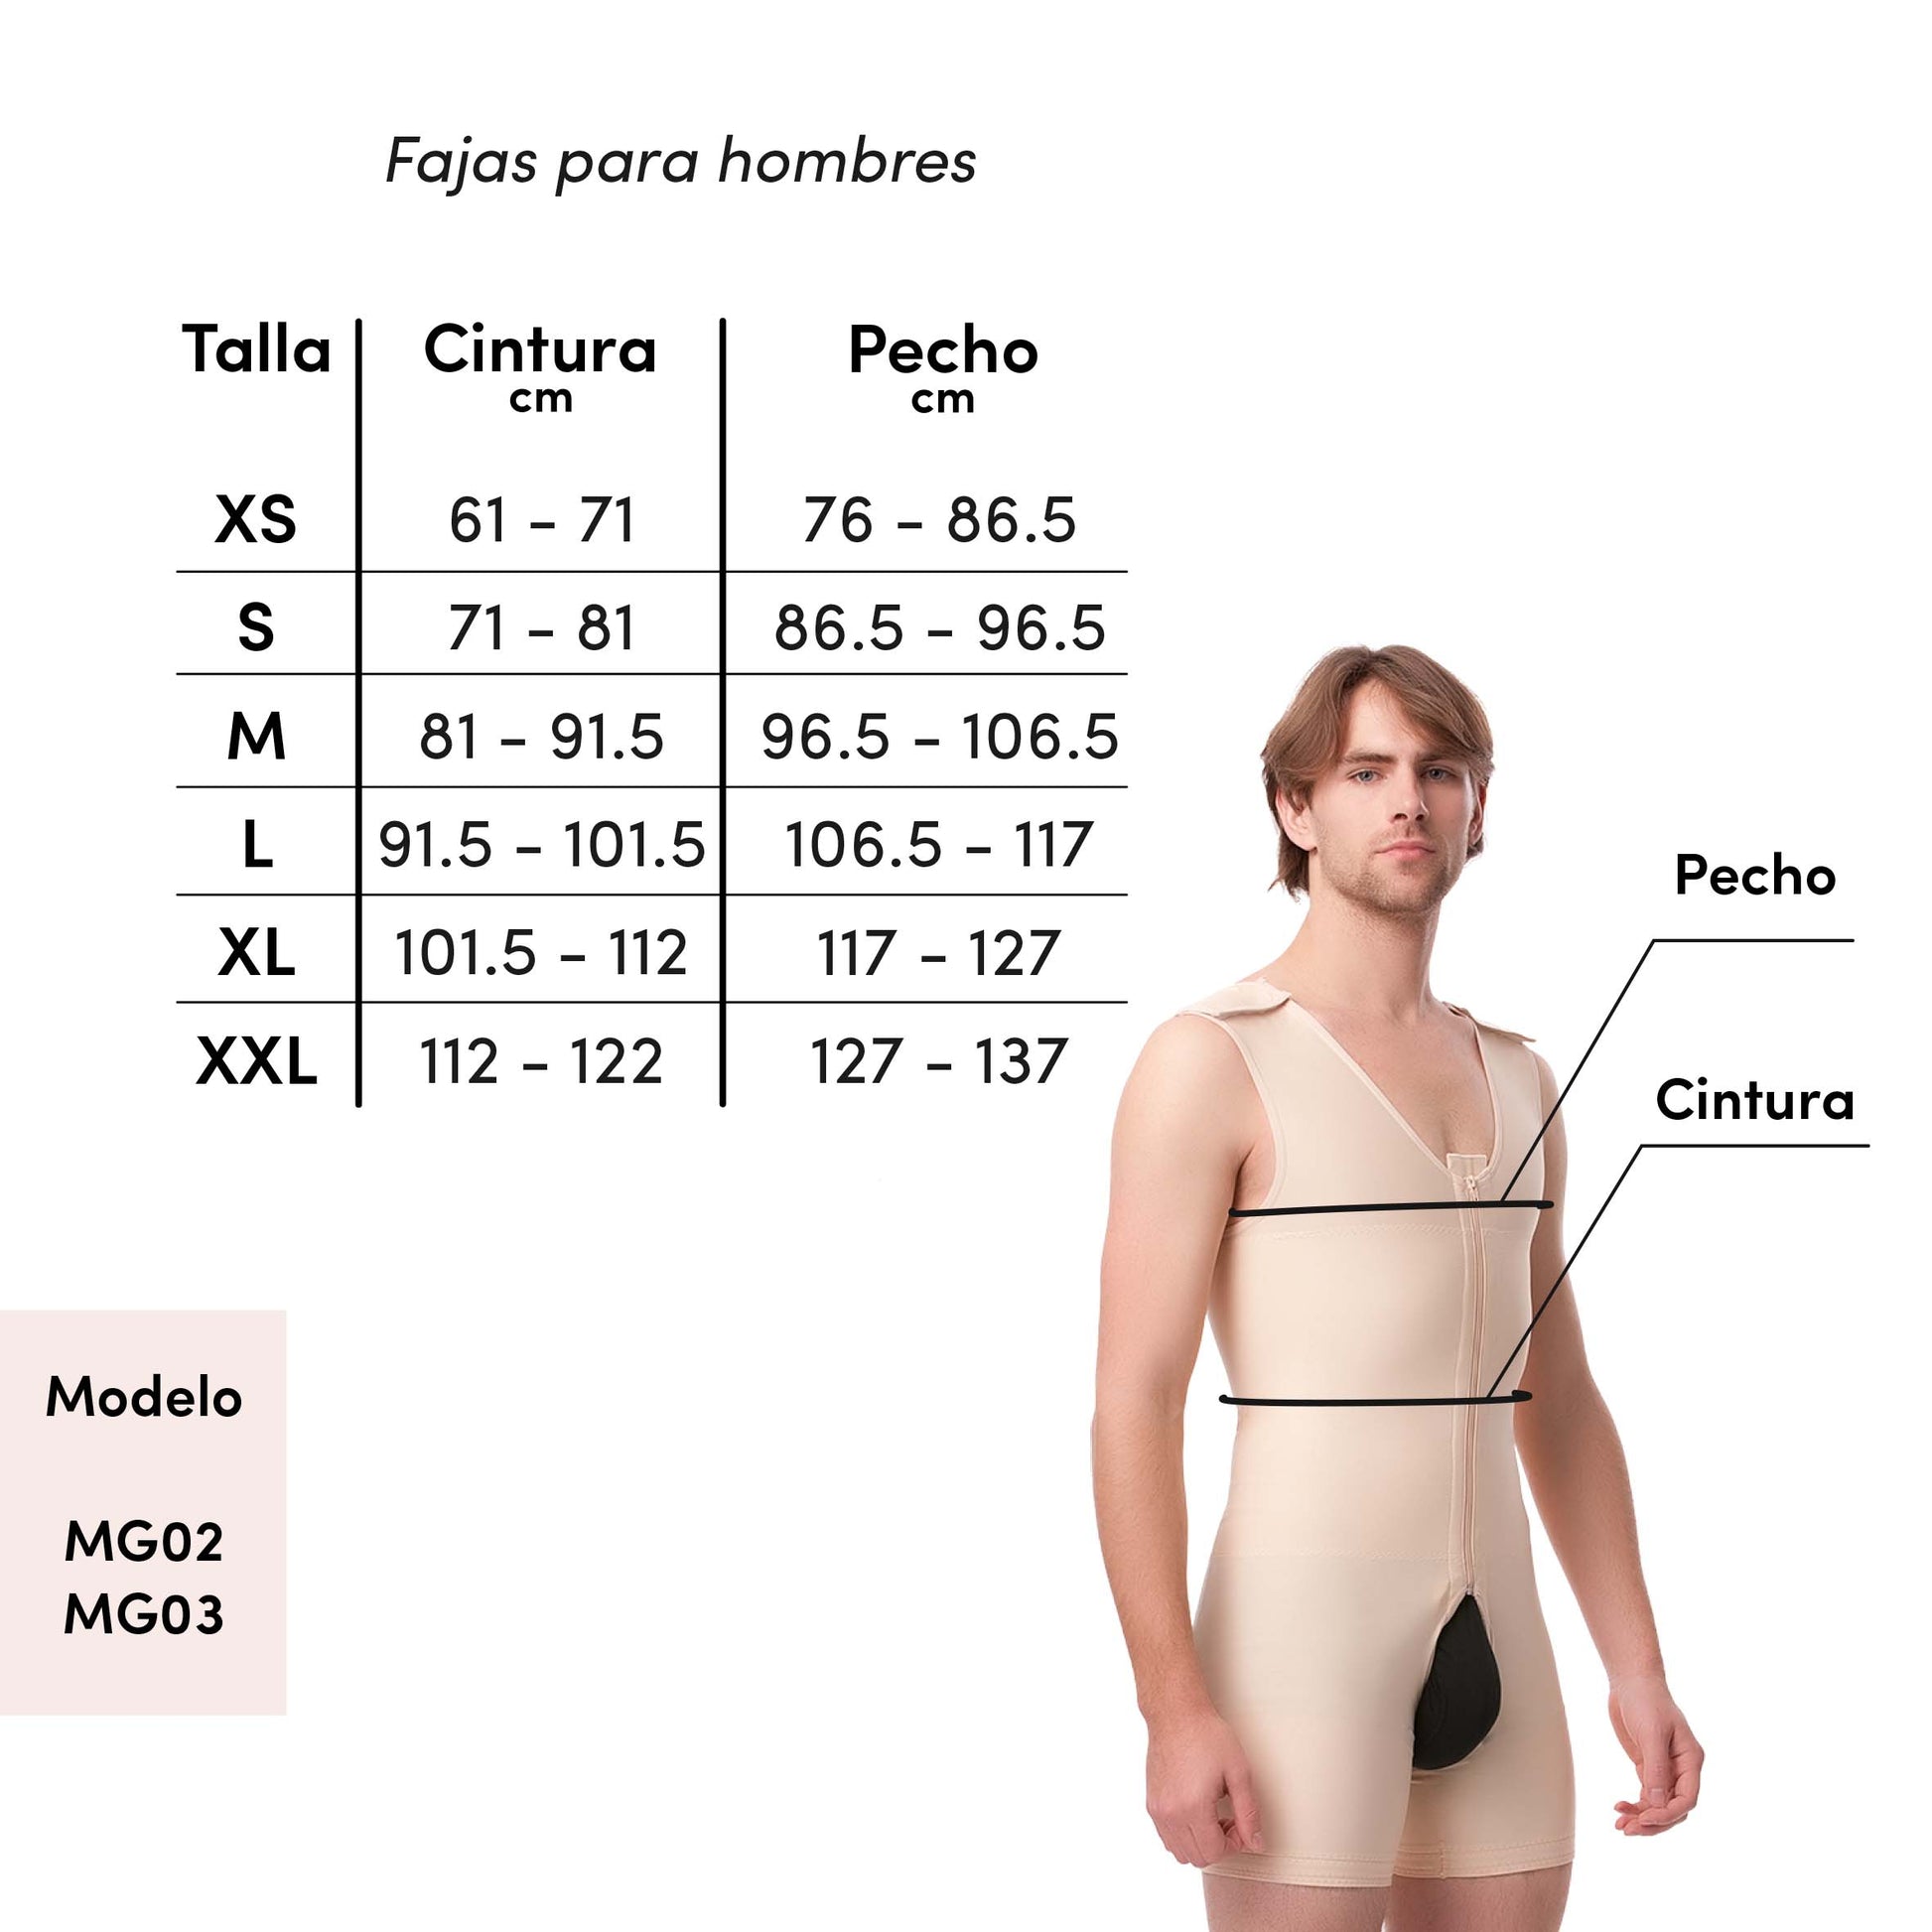 Faja de medio cuerpo para hombre (MG02) – Fajas Isavela